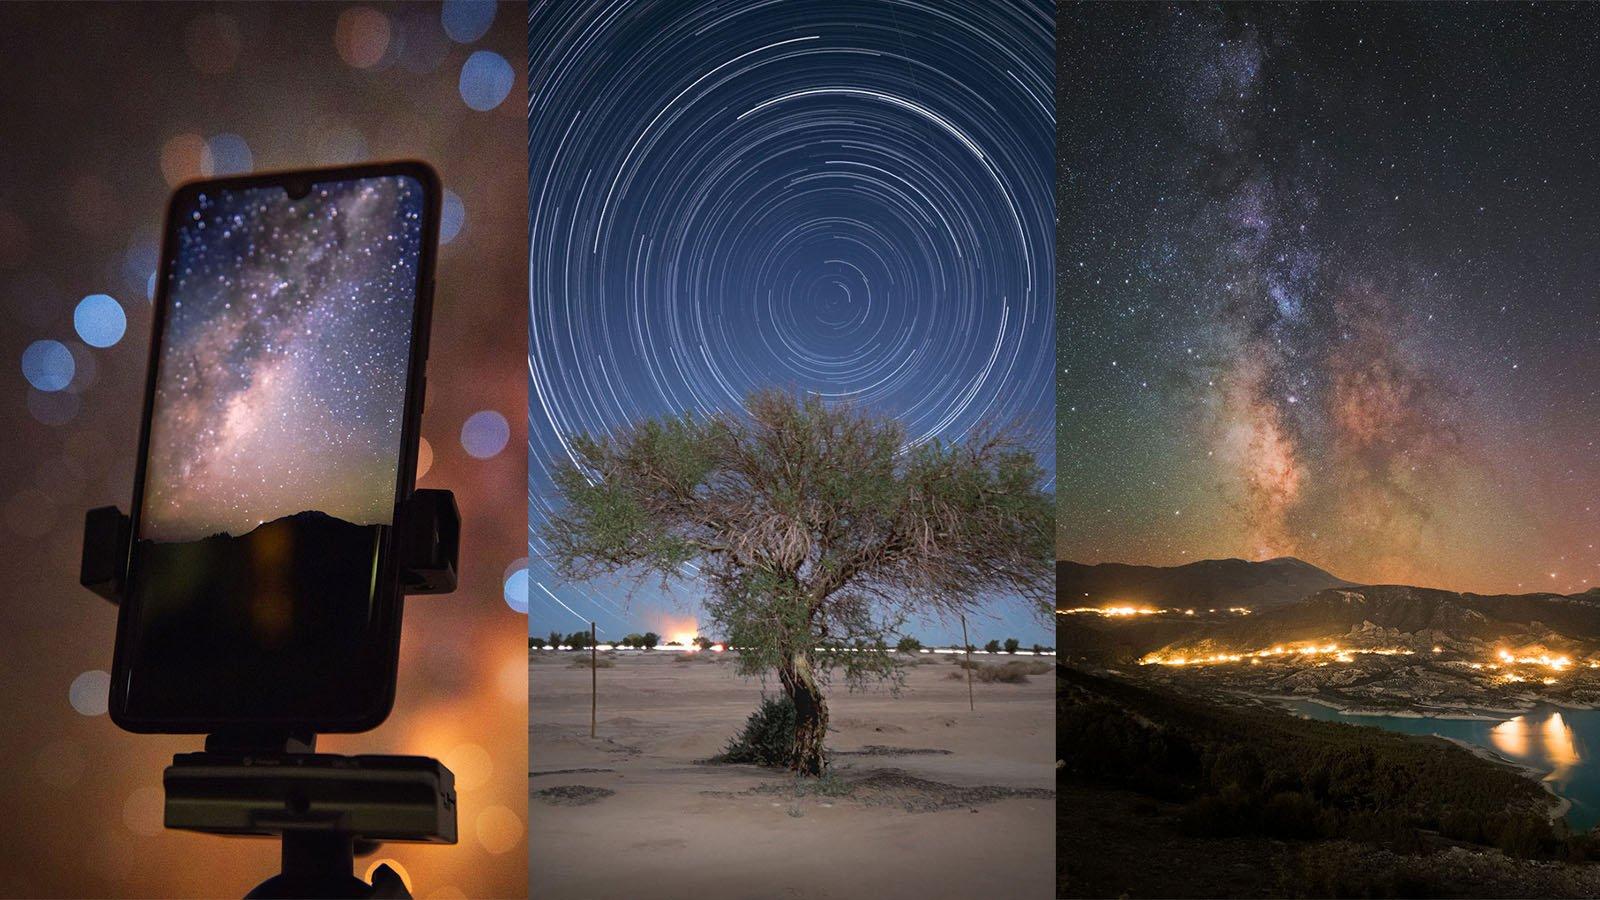 Bạn không phải là một nhiếp ảnh gia chuyên nghiệp, nhưng với một chiếc điện thoại thông minh và đam mê chụp ảnh thiên văn, bạn cũng có thể tạo ra những bức ảnh tuyệt đẹp. Hãy xem qua bức ảnh này và khám phá thế giới bên trên của chúng ta.